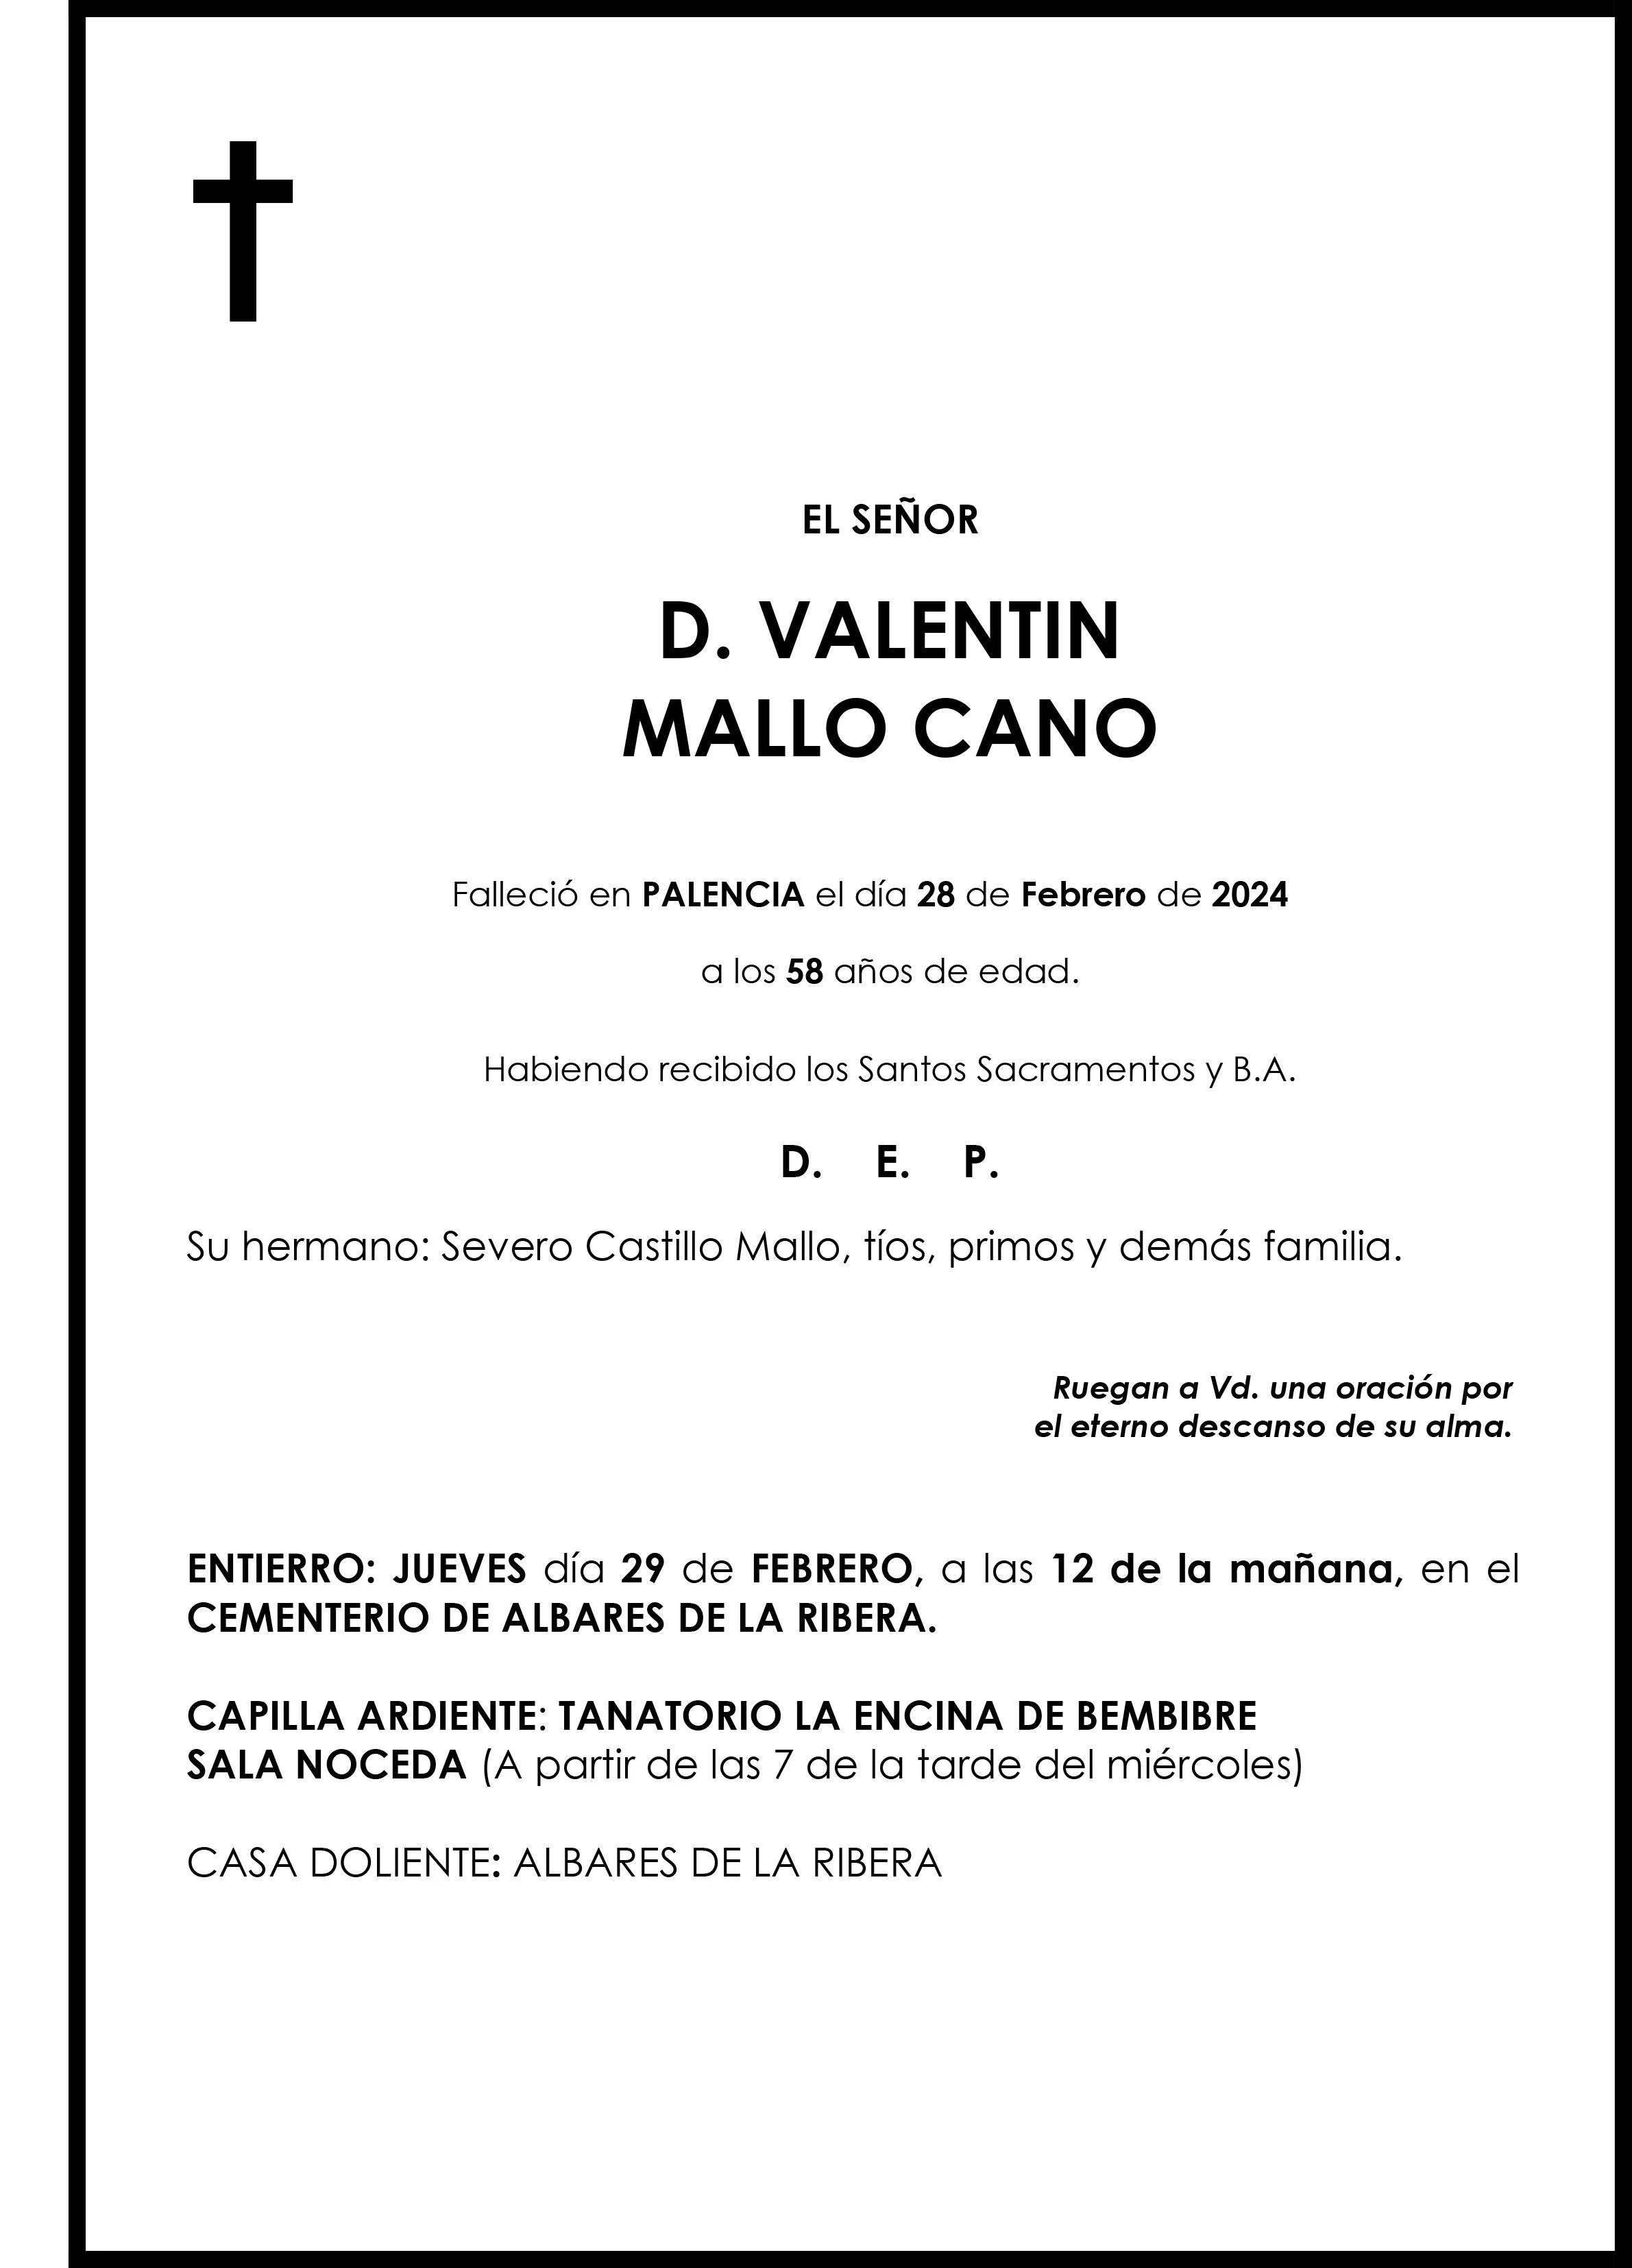 VALENTIN MALLO CANO